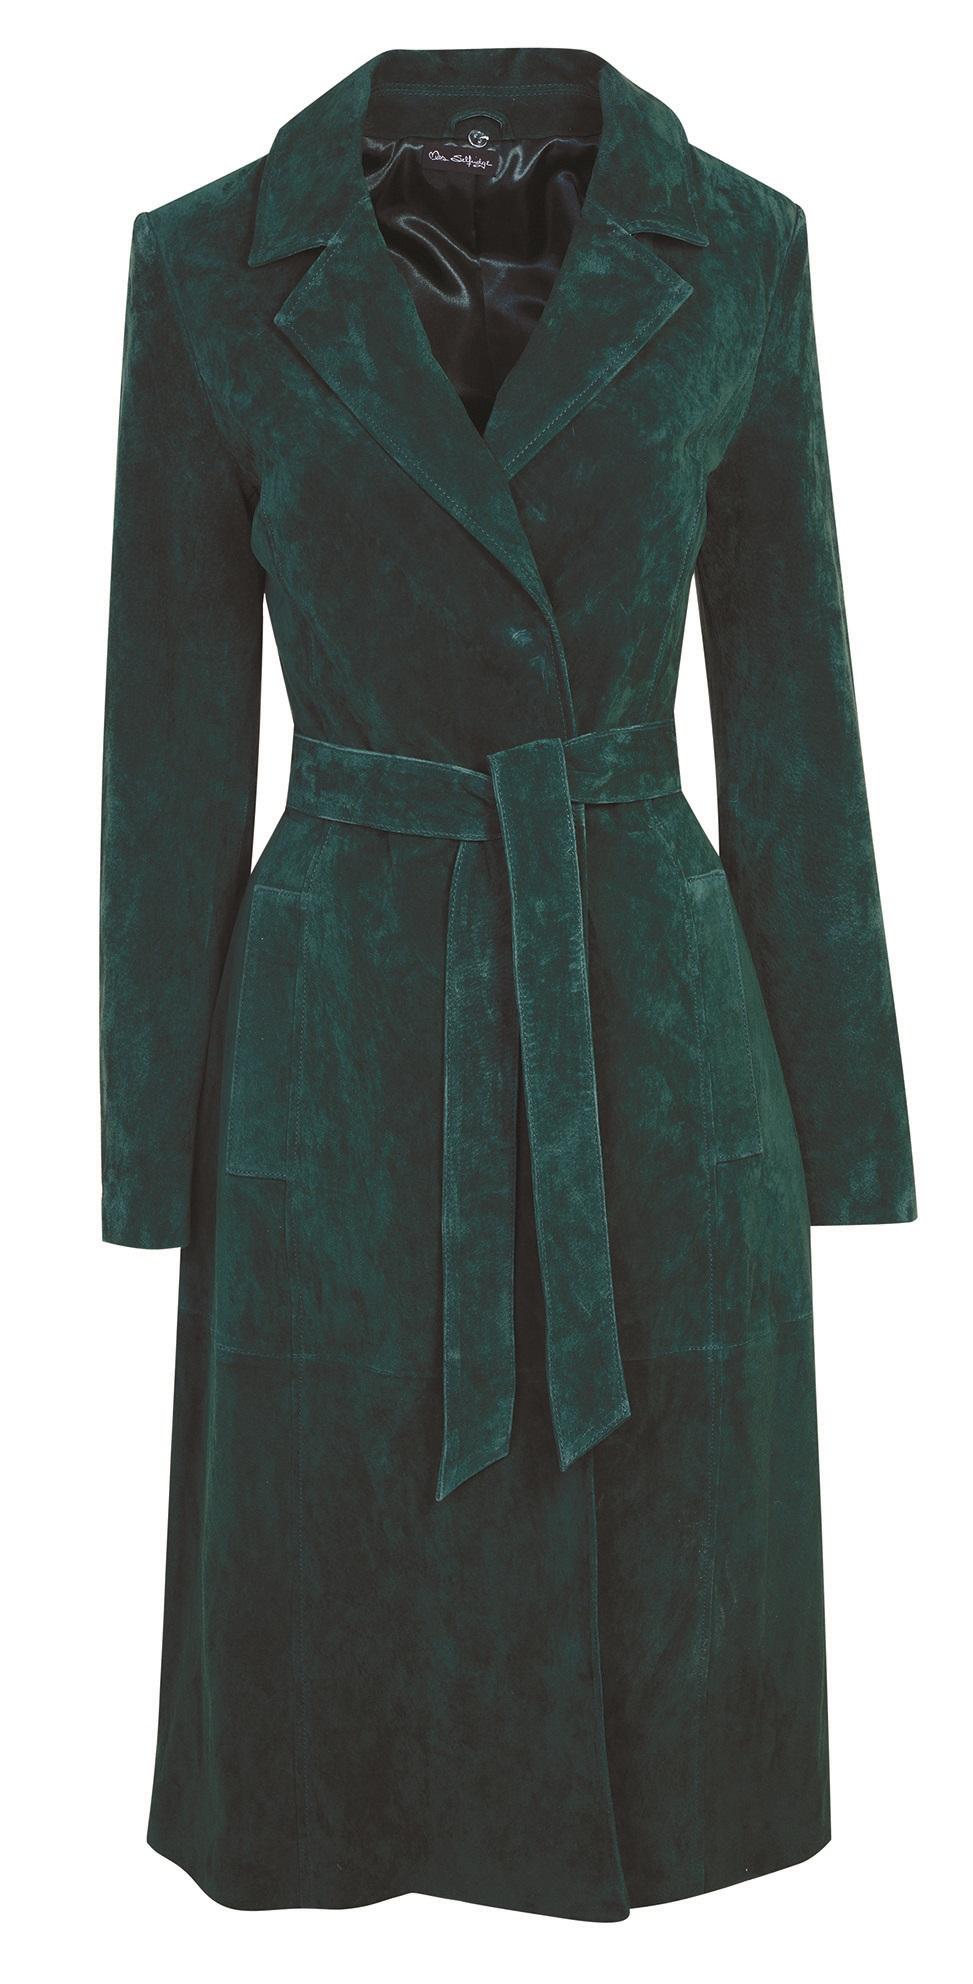 Miss Selfridge, Suede Trench Coat, £175